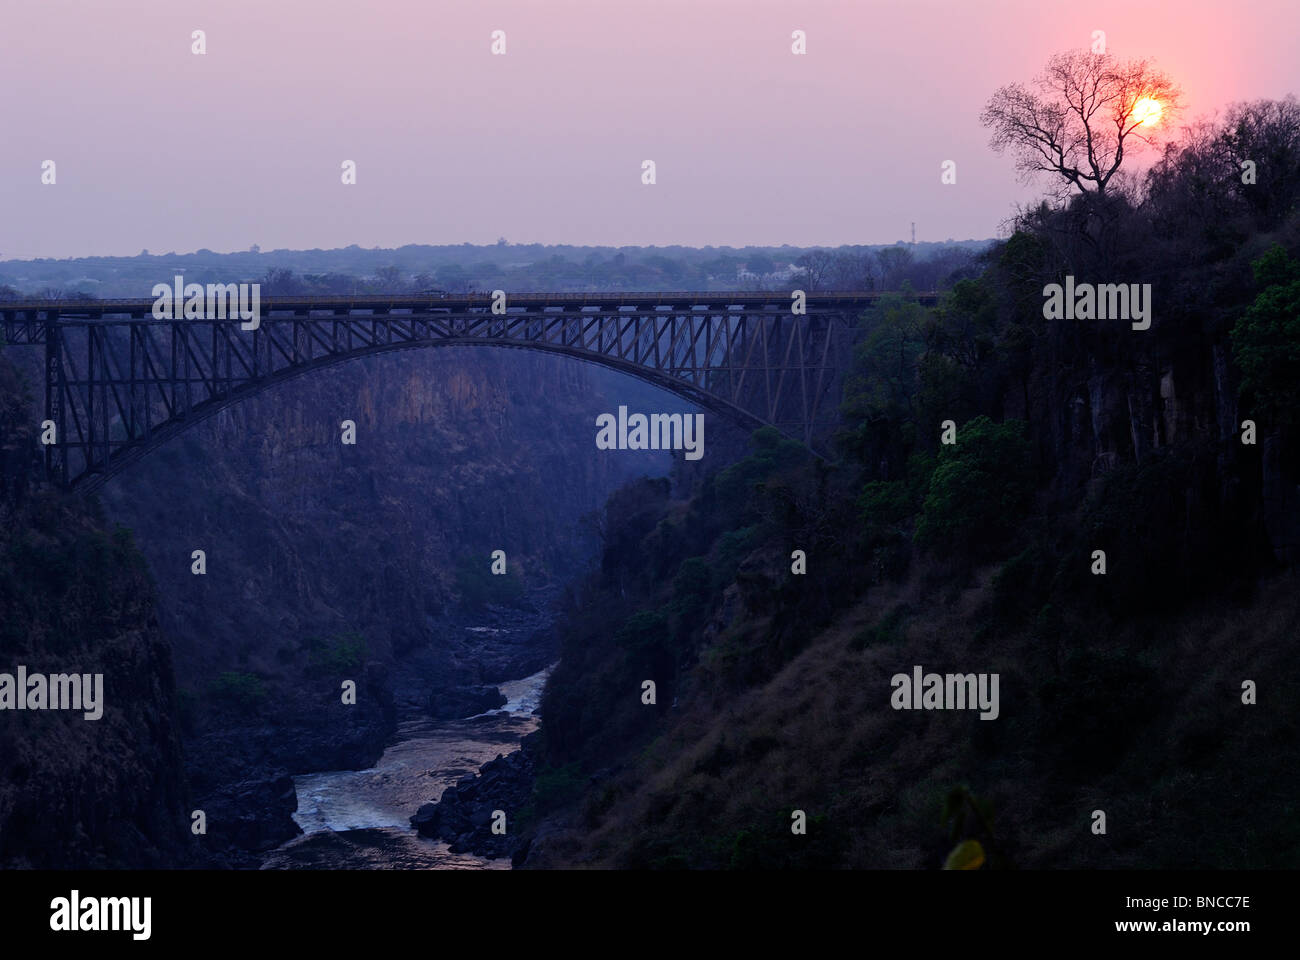 Victoria Falls bridge above the Zambezi River at sunset, Zambia Stock Photo